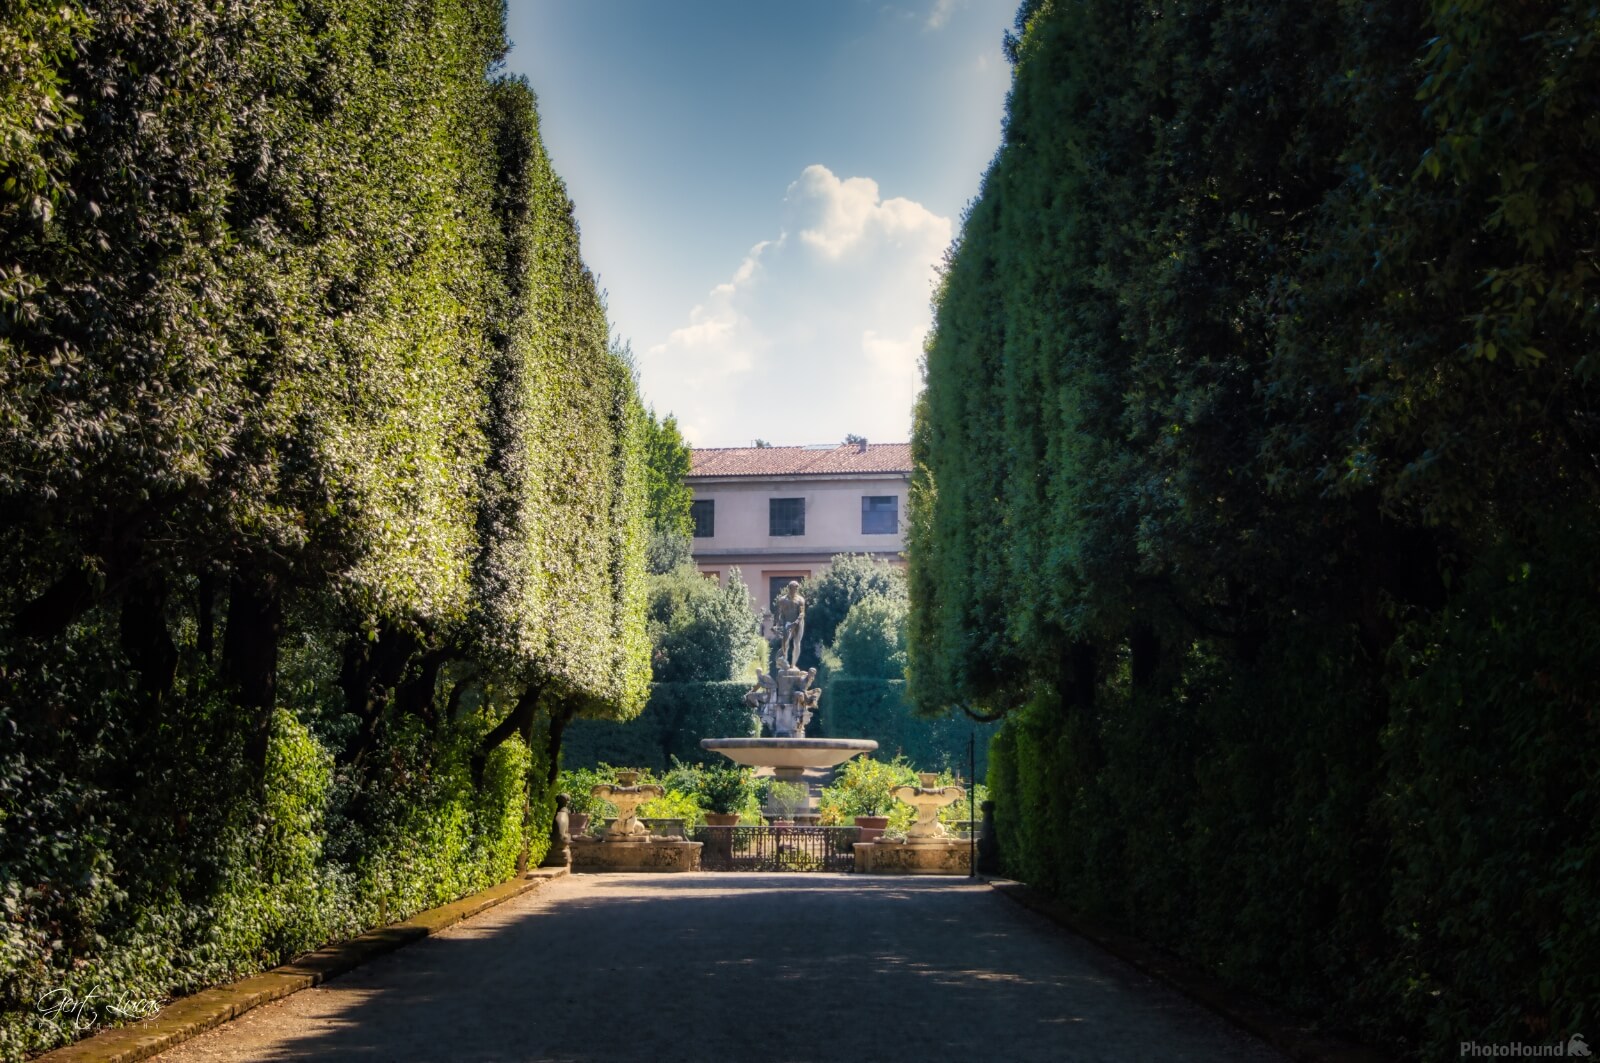 Image of Boboli Gardens, Firenze by Gert Lucas